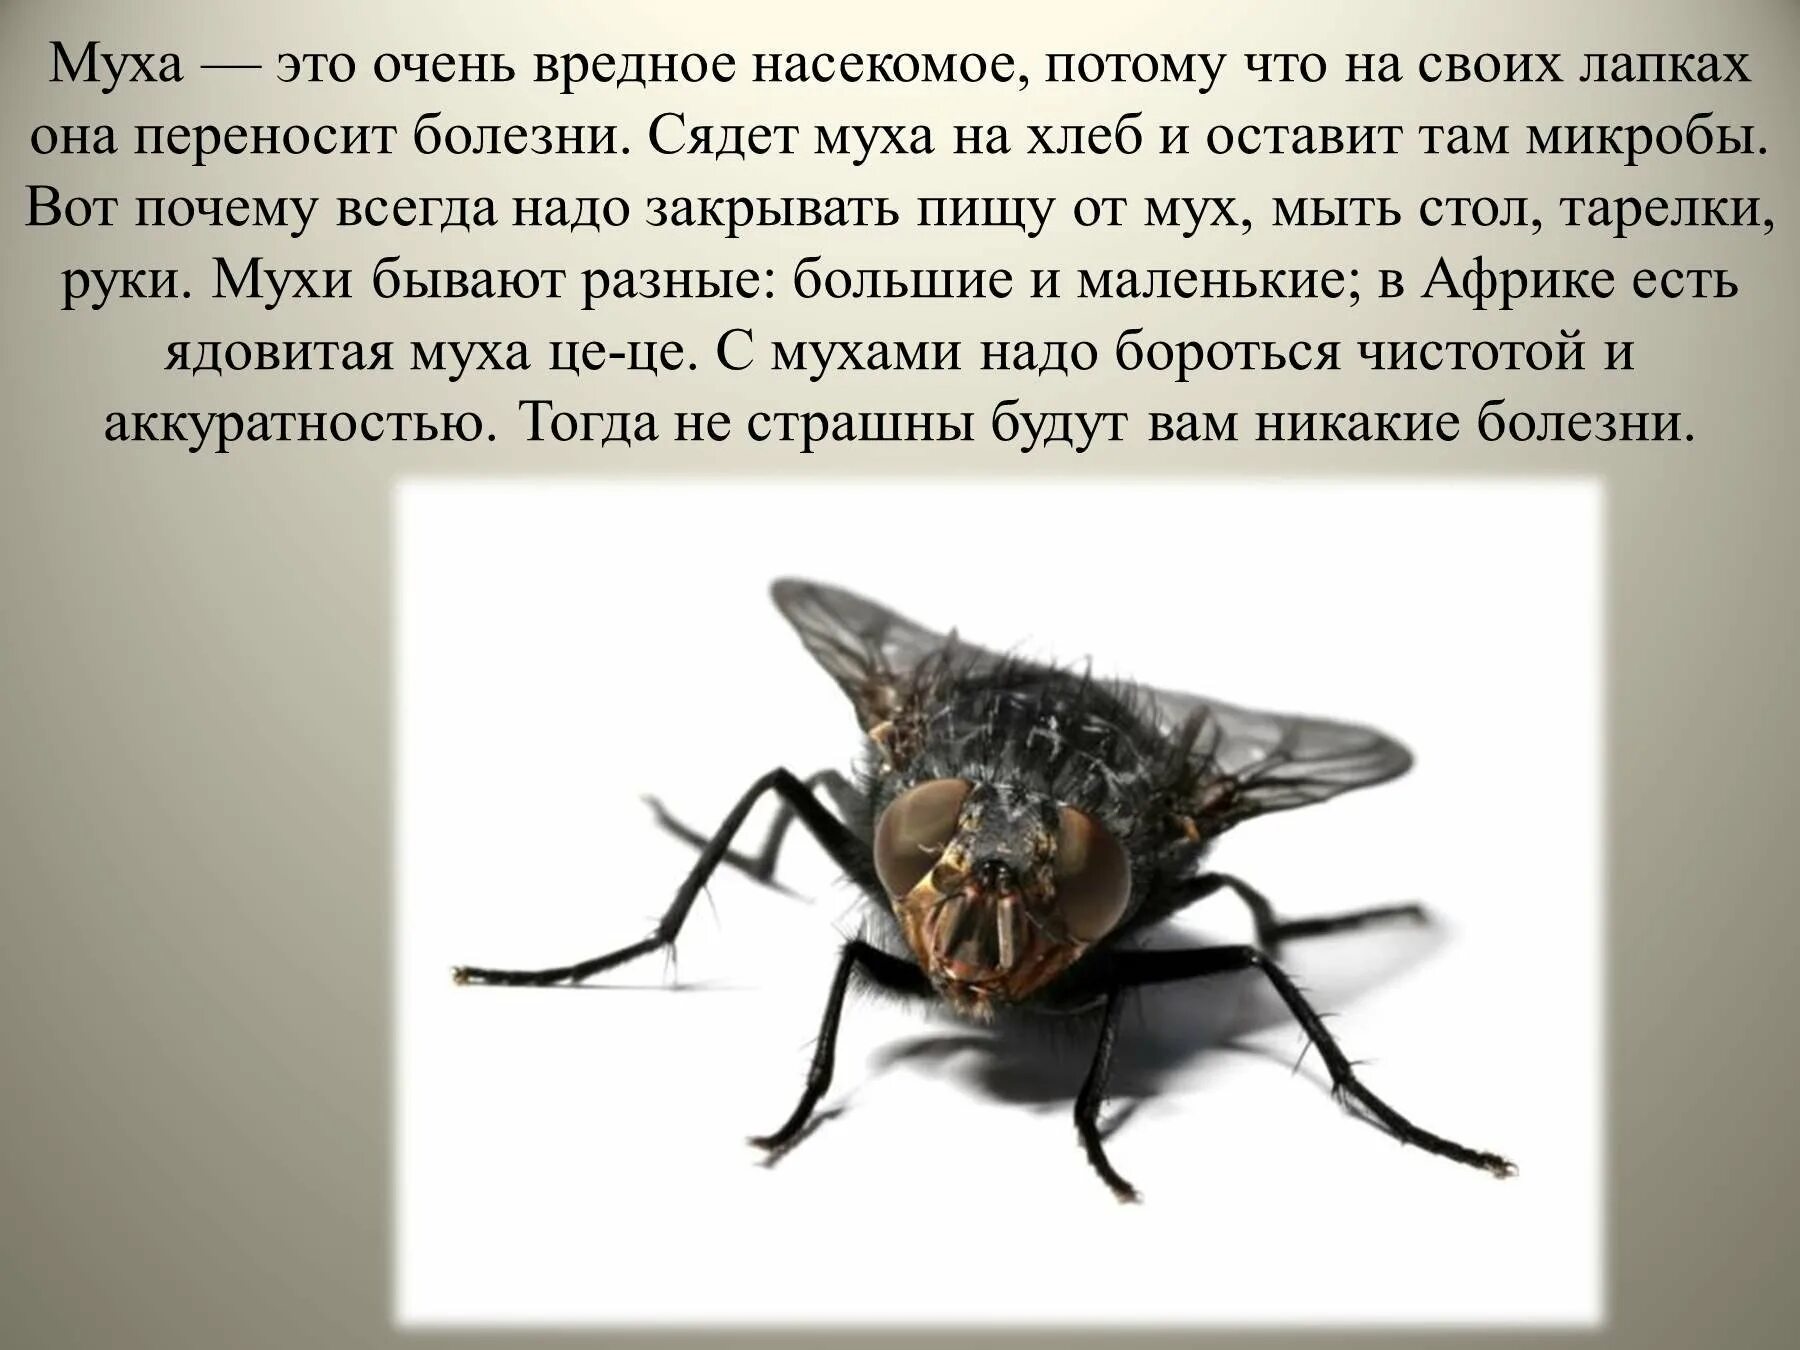 Доклад про мух. Вредные насекомые. Сообщение про муху. Интересные факты о мухах. Сколько едят мухи